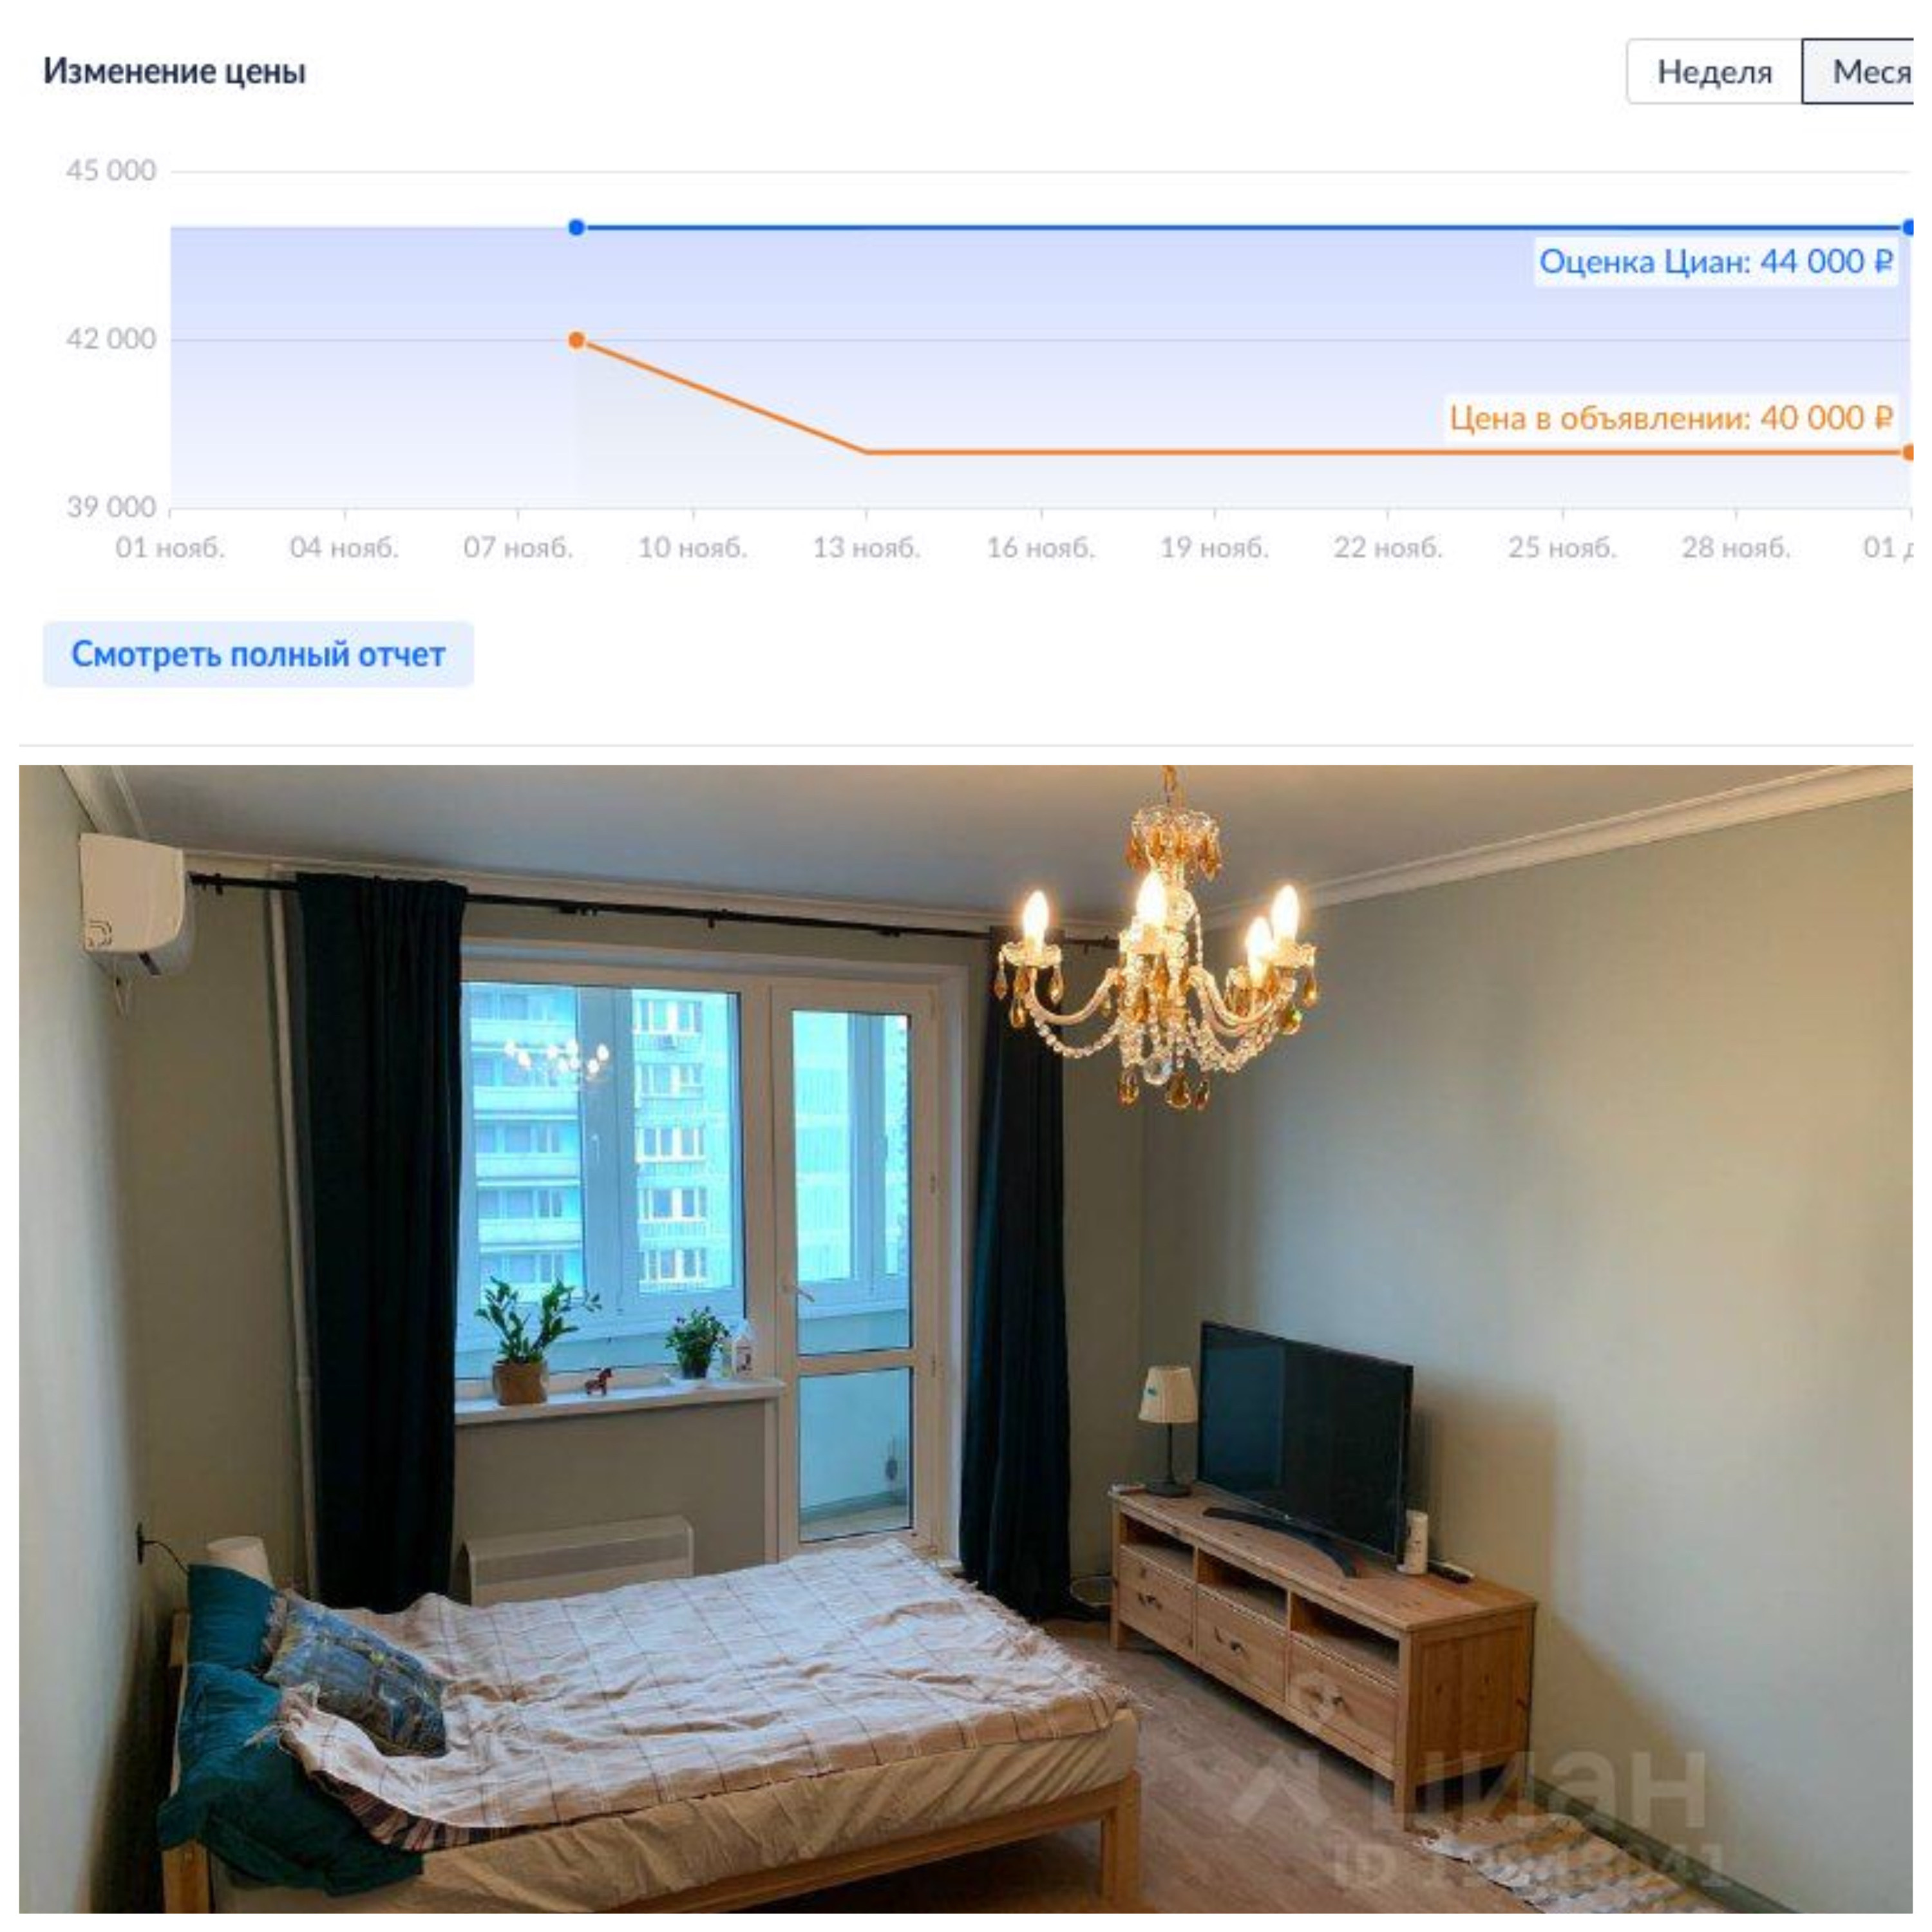 Недвижимость дешевеет в Москве. Сонник приснилась квартира